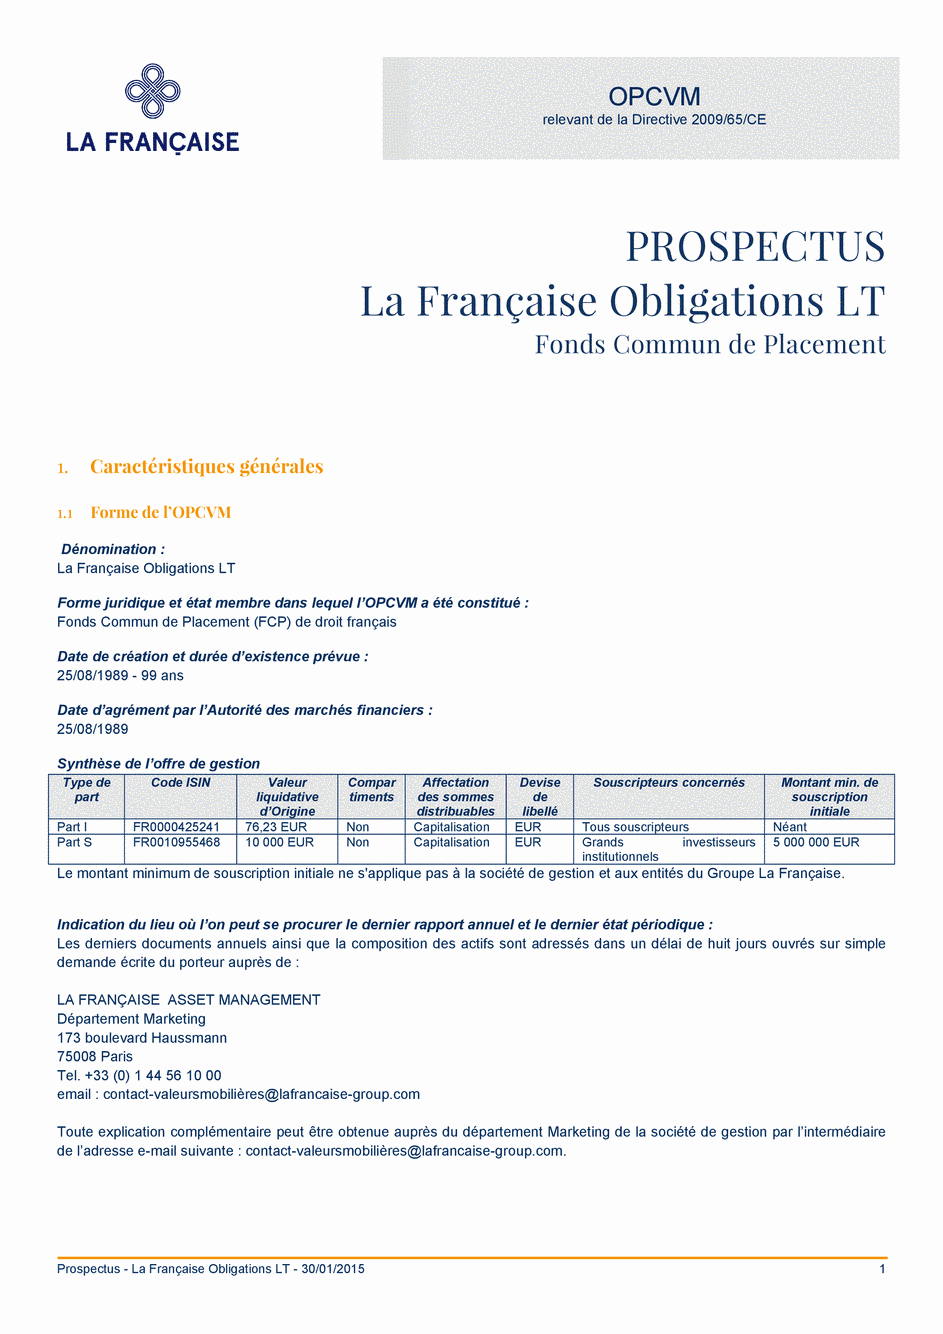 Prospectus La Française Obligations LT - Part I - 30/01/2015 - Français